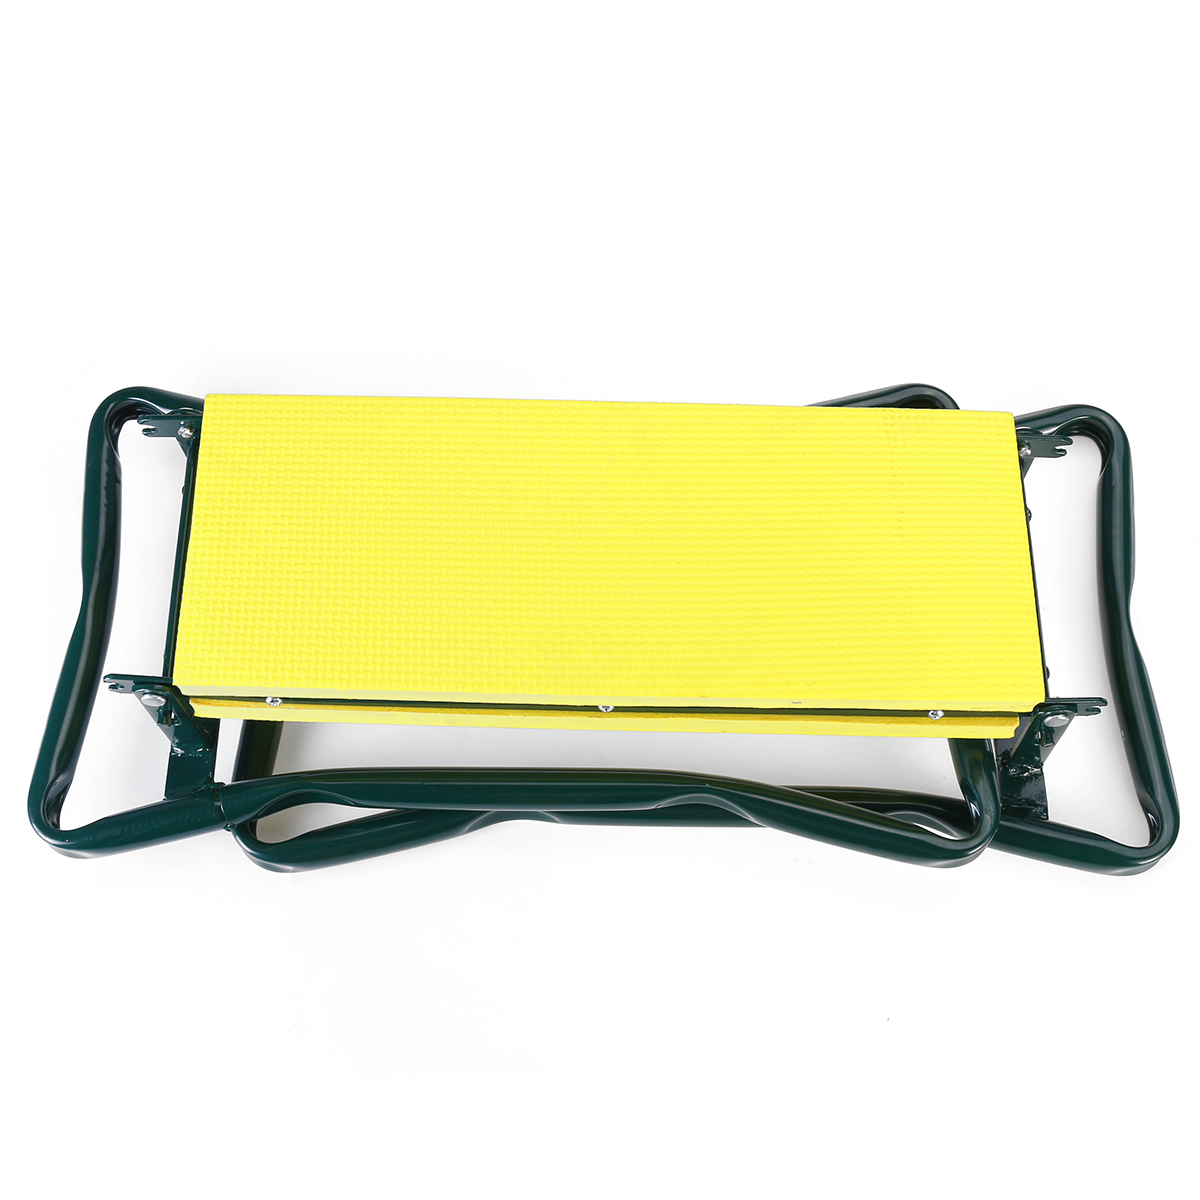 Foldaway-Garden-Kneeler-Seat-Kneeling-Bench-EVA-Soft-Pad-Stool-With-Outdoor-Pouch-1721434-8